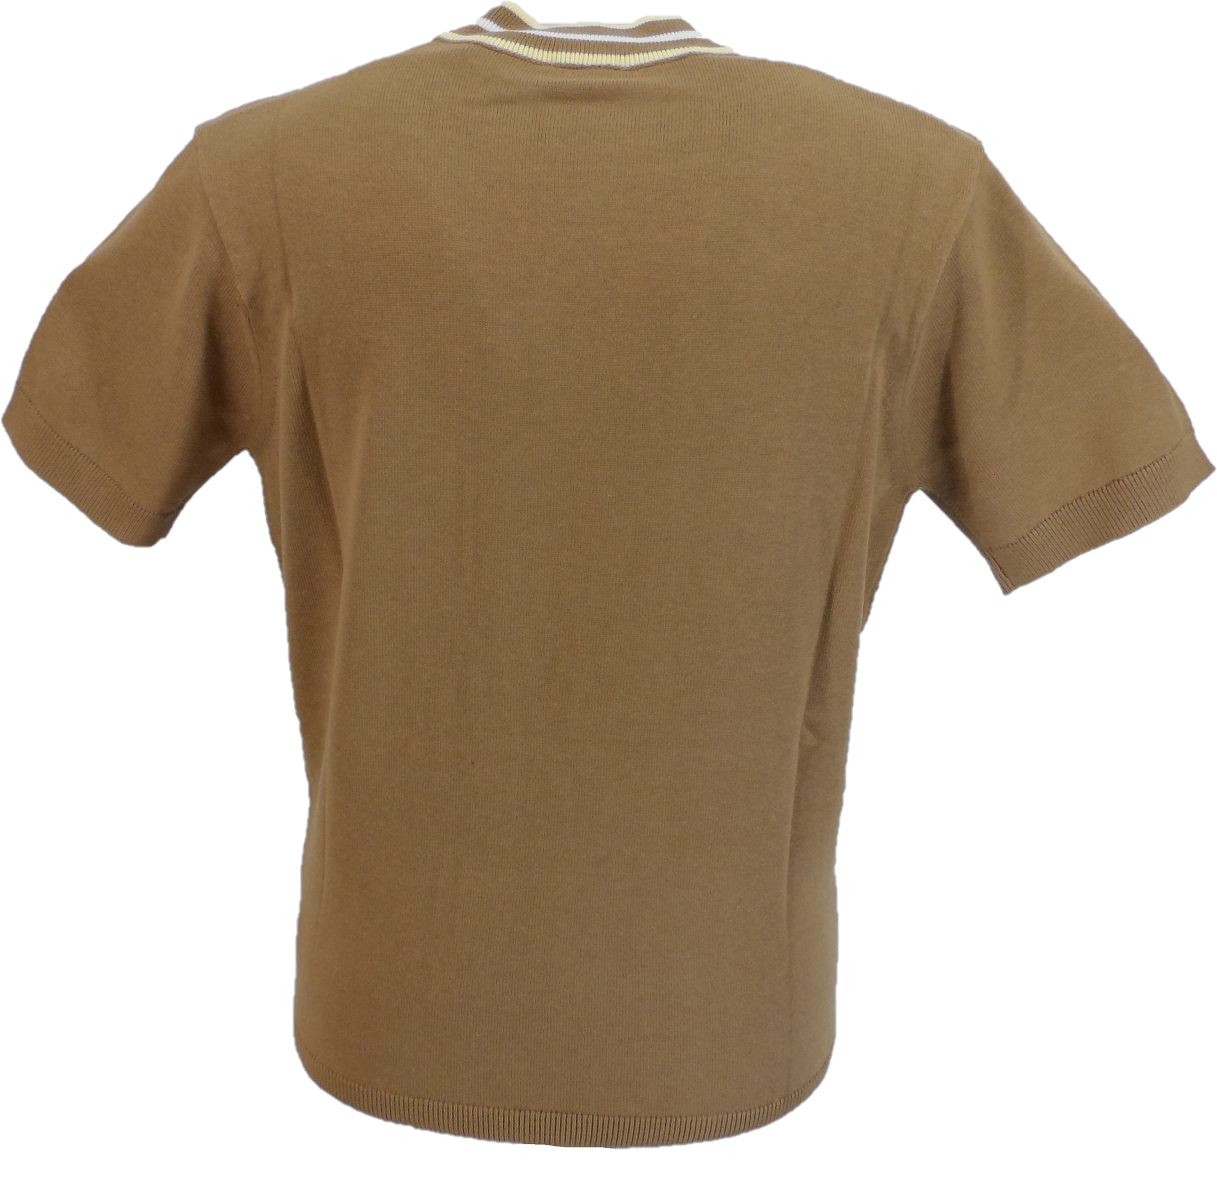 Gabicci Vintage jersey de punto con cuello alto de fieltro marrón camel para hombre